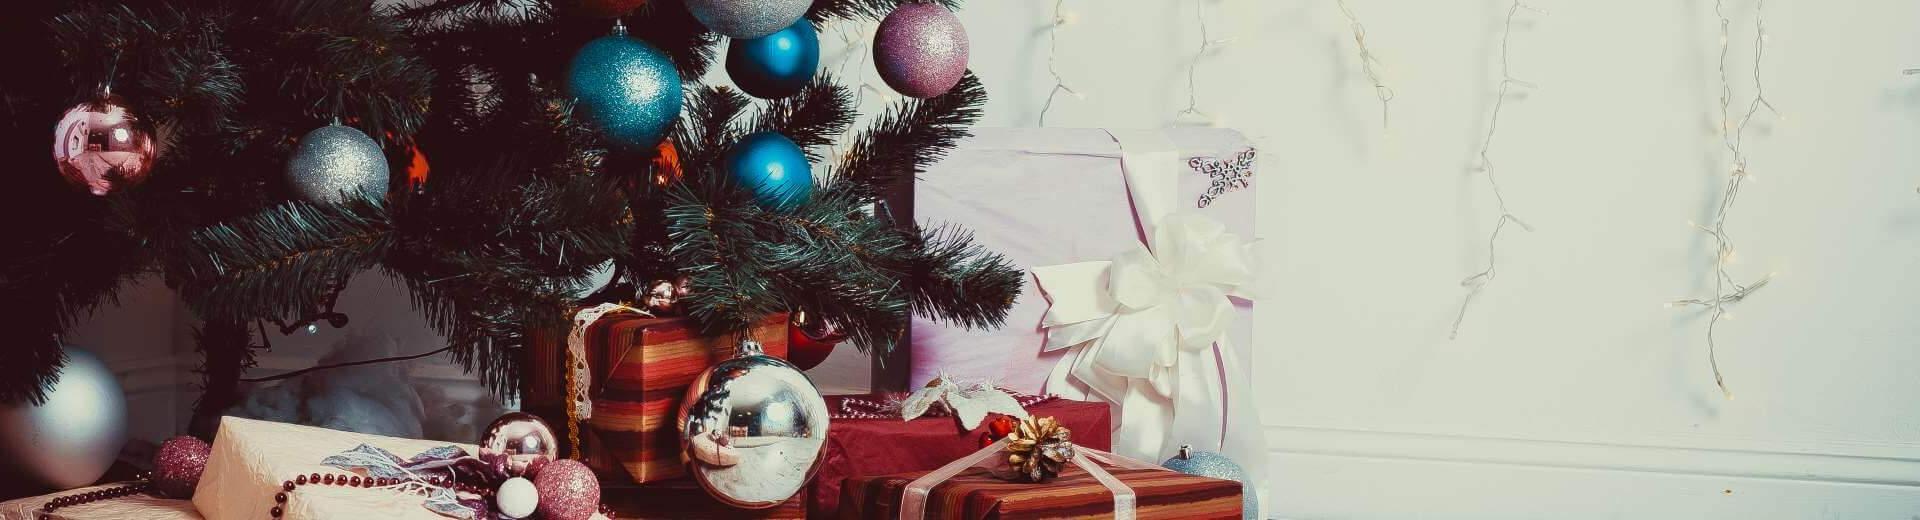 Weihnachten im Ferienhaus in der Türkei | Casamundo - Casamundo